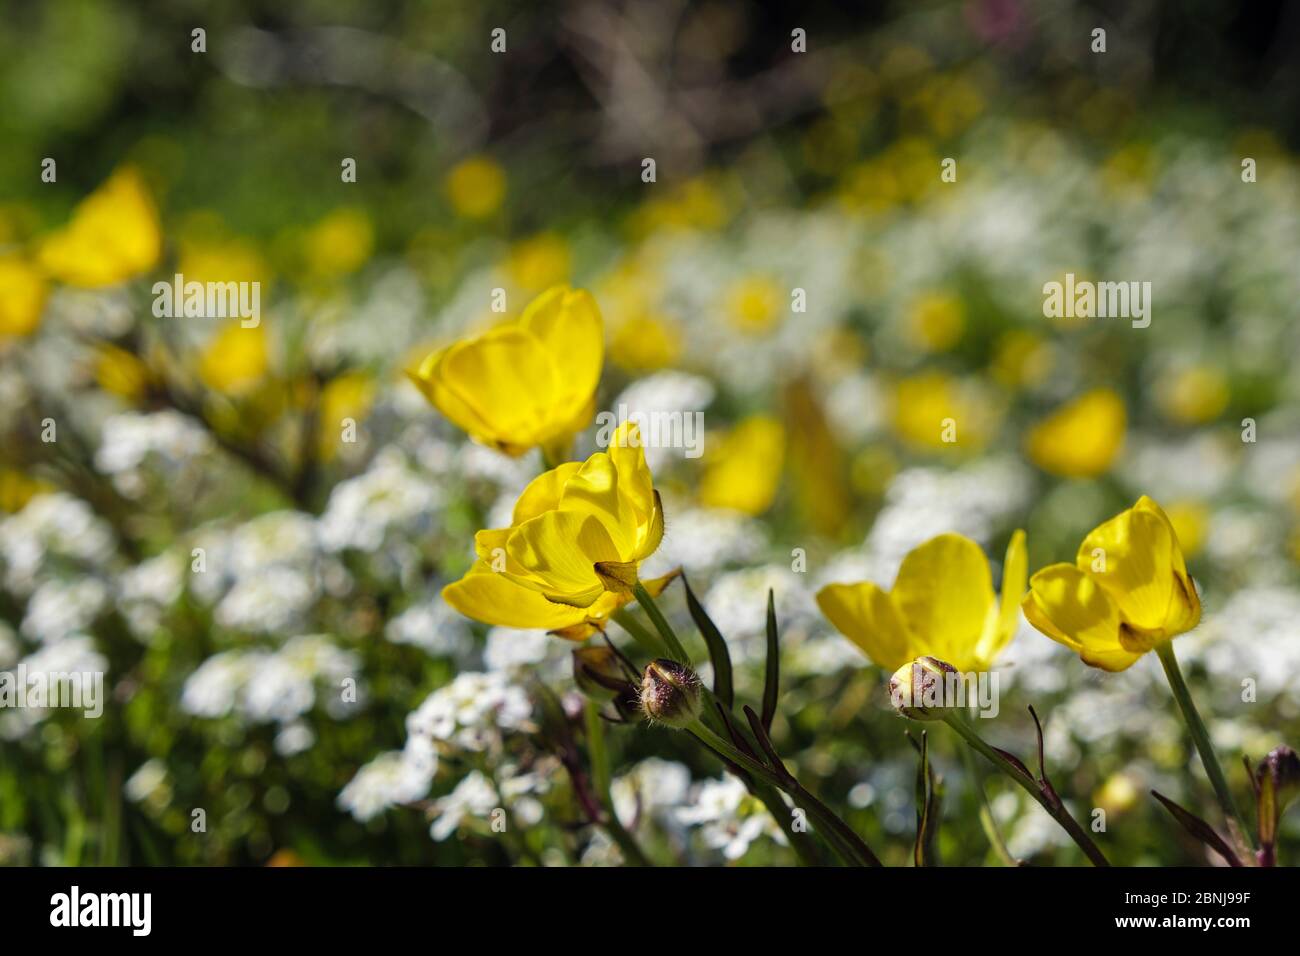 Des papillons jaunes fleurissent avec des fleurs sauvages dans un champ herbacé de prairie. Benllech, Île d'Anglesey, pays de Galles, Royaume-Uni, Grande-Bretagne Banque D'Images